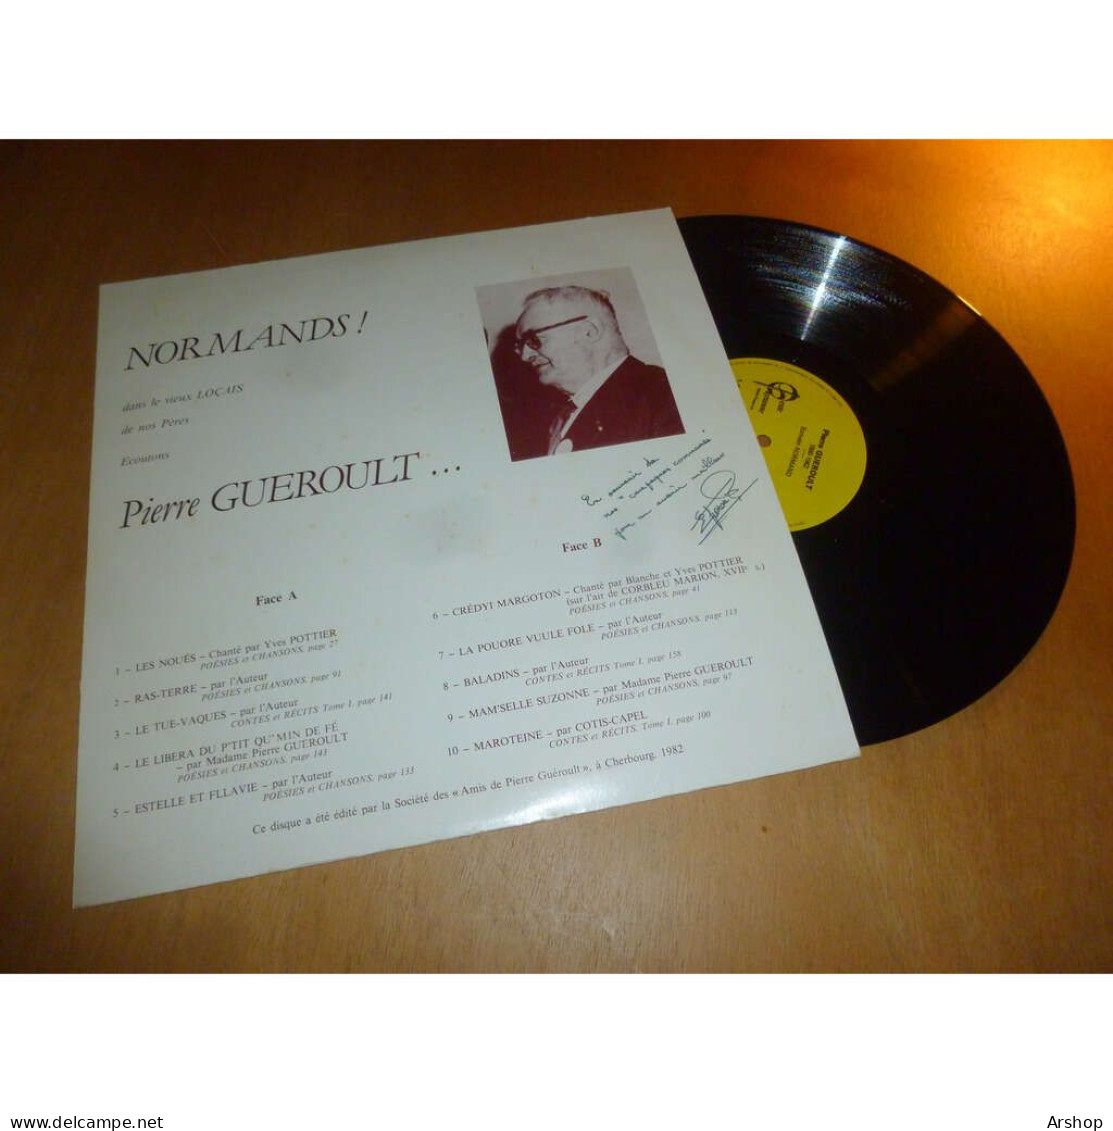 PIERRE GUEROULT Normands - FOLK Traditionnel TEXTES LUS CONTES - Disque GESTE PAYSANNE UP 501 France 1982 - Autres - Musique Française